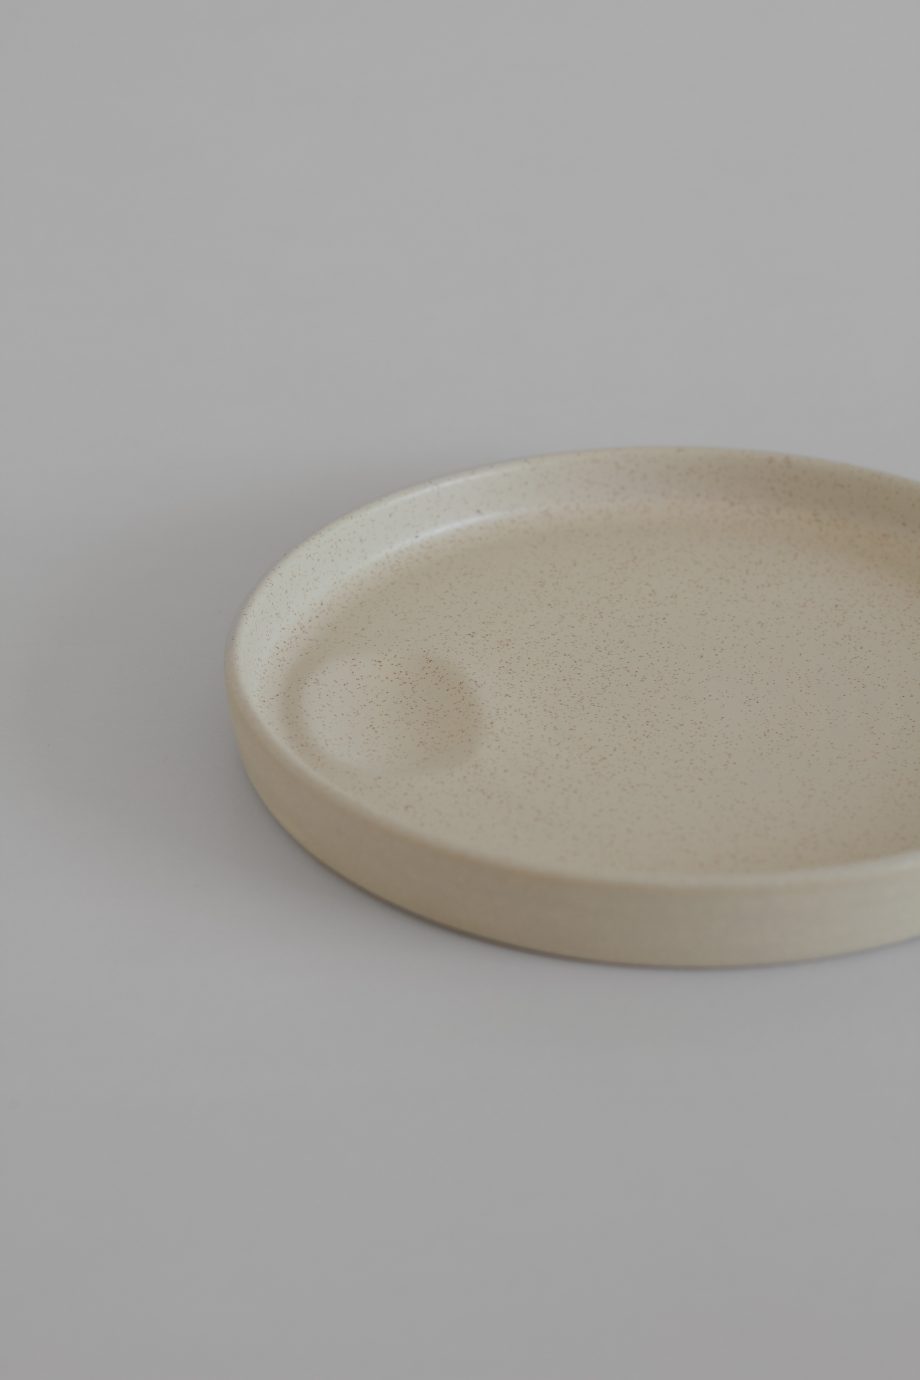 Plat en céramique crème avec intérieur émaillé de la marque portugaise de céramique artisanale O Cactuu.